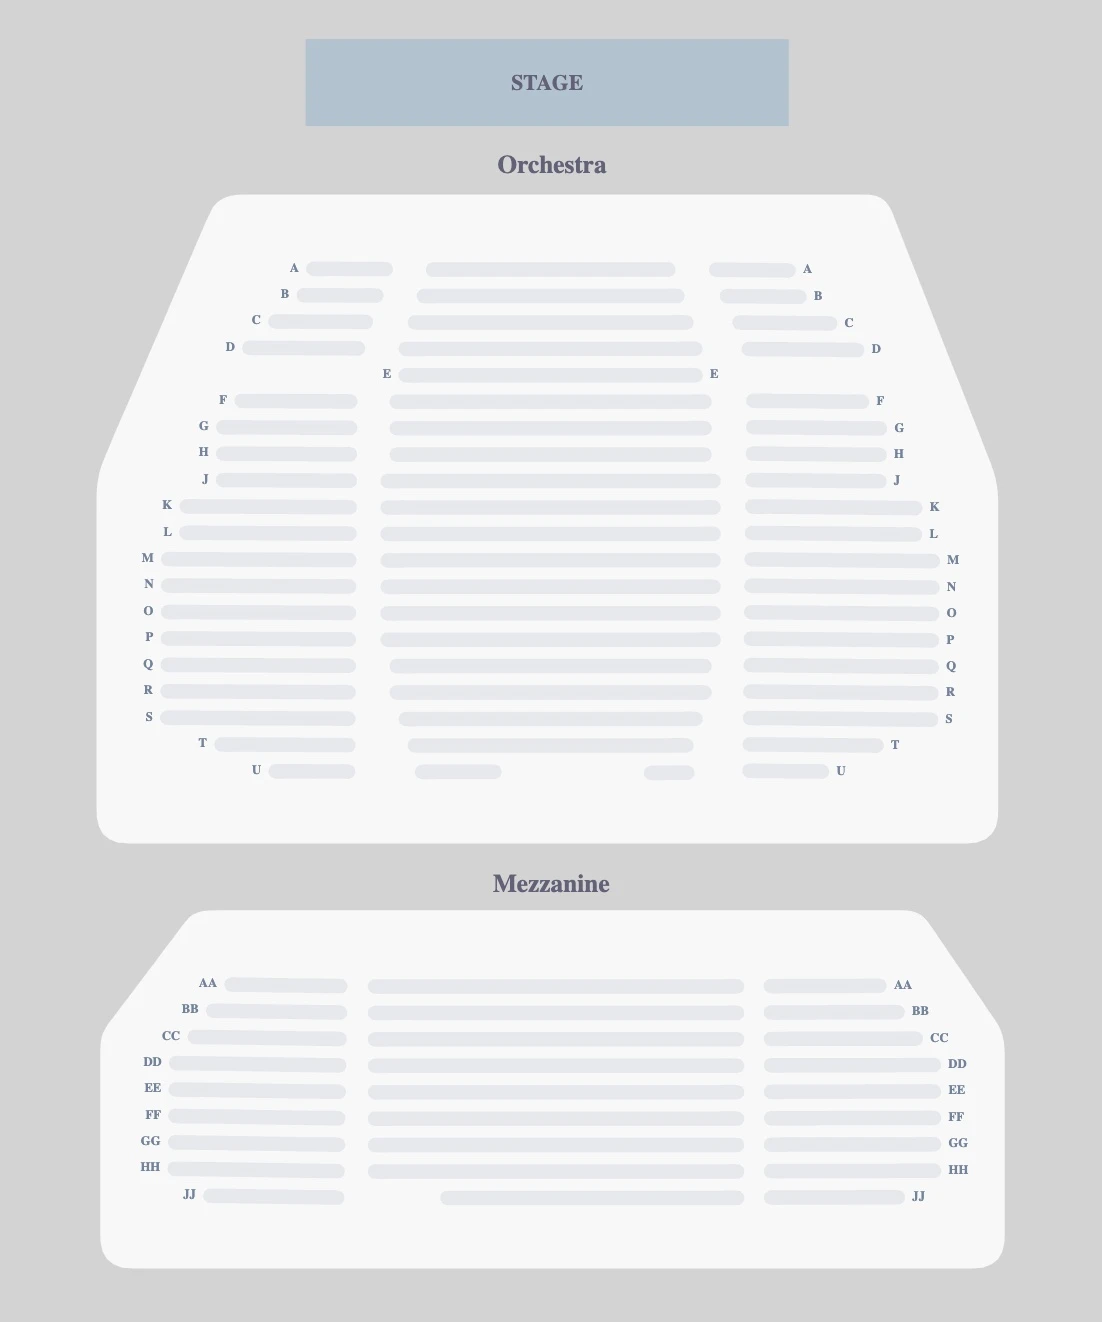 Stephen Sondheim Theatre seating plan